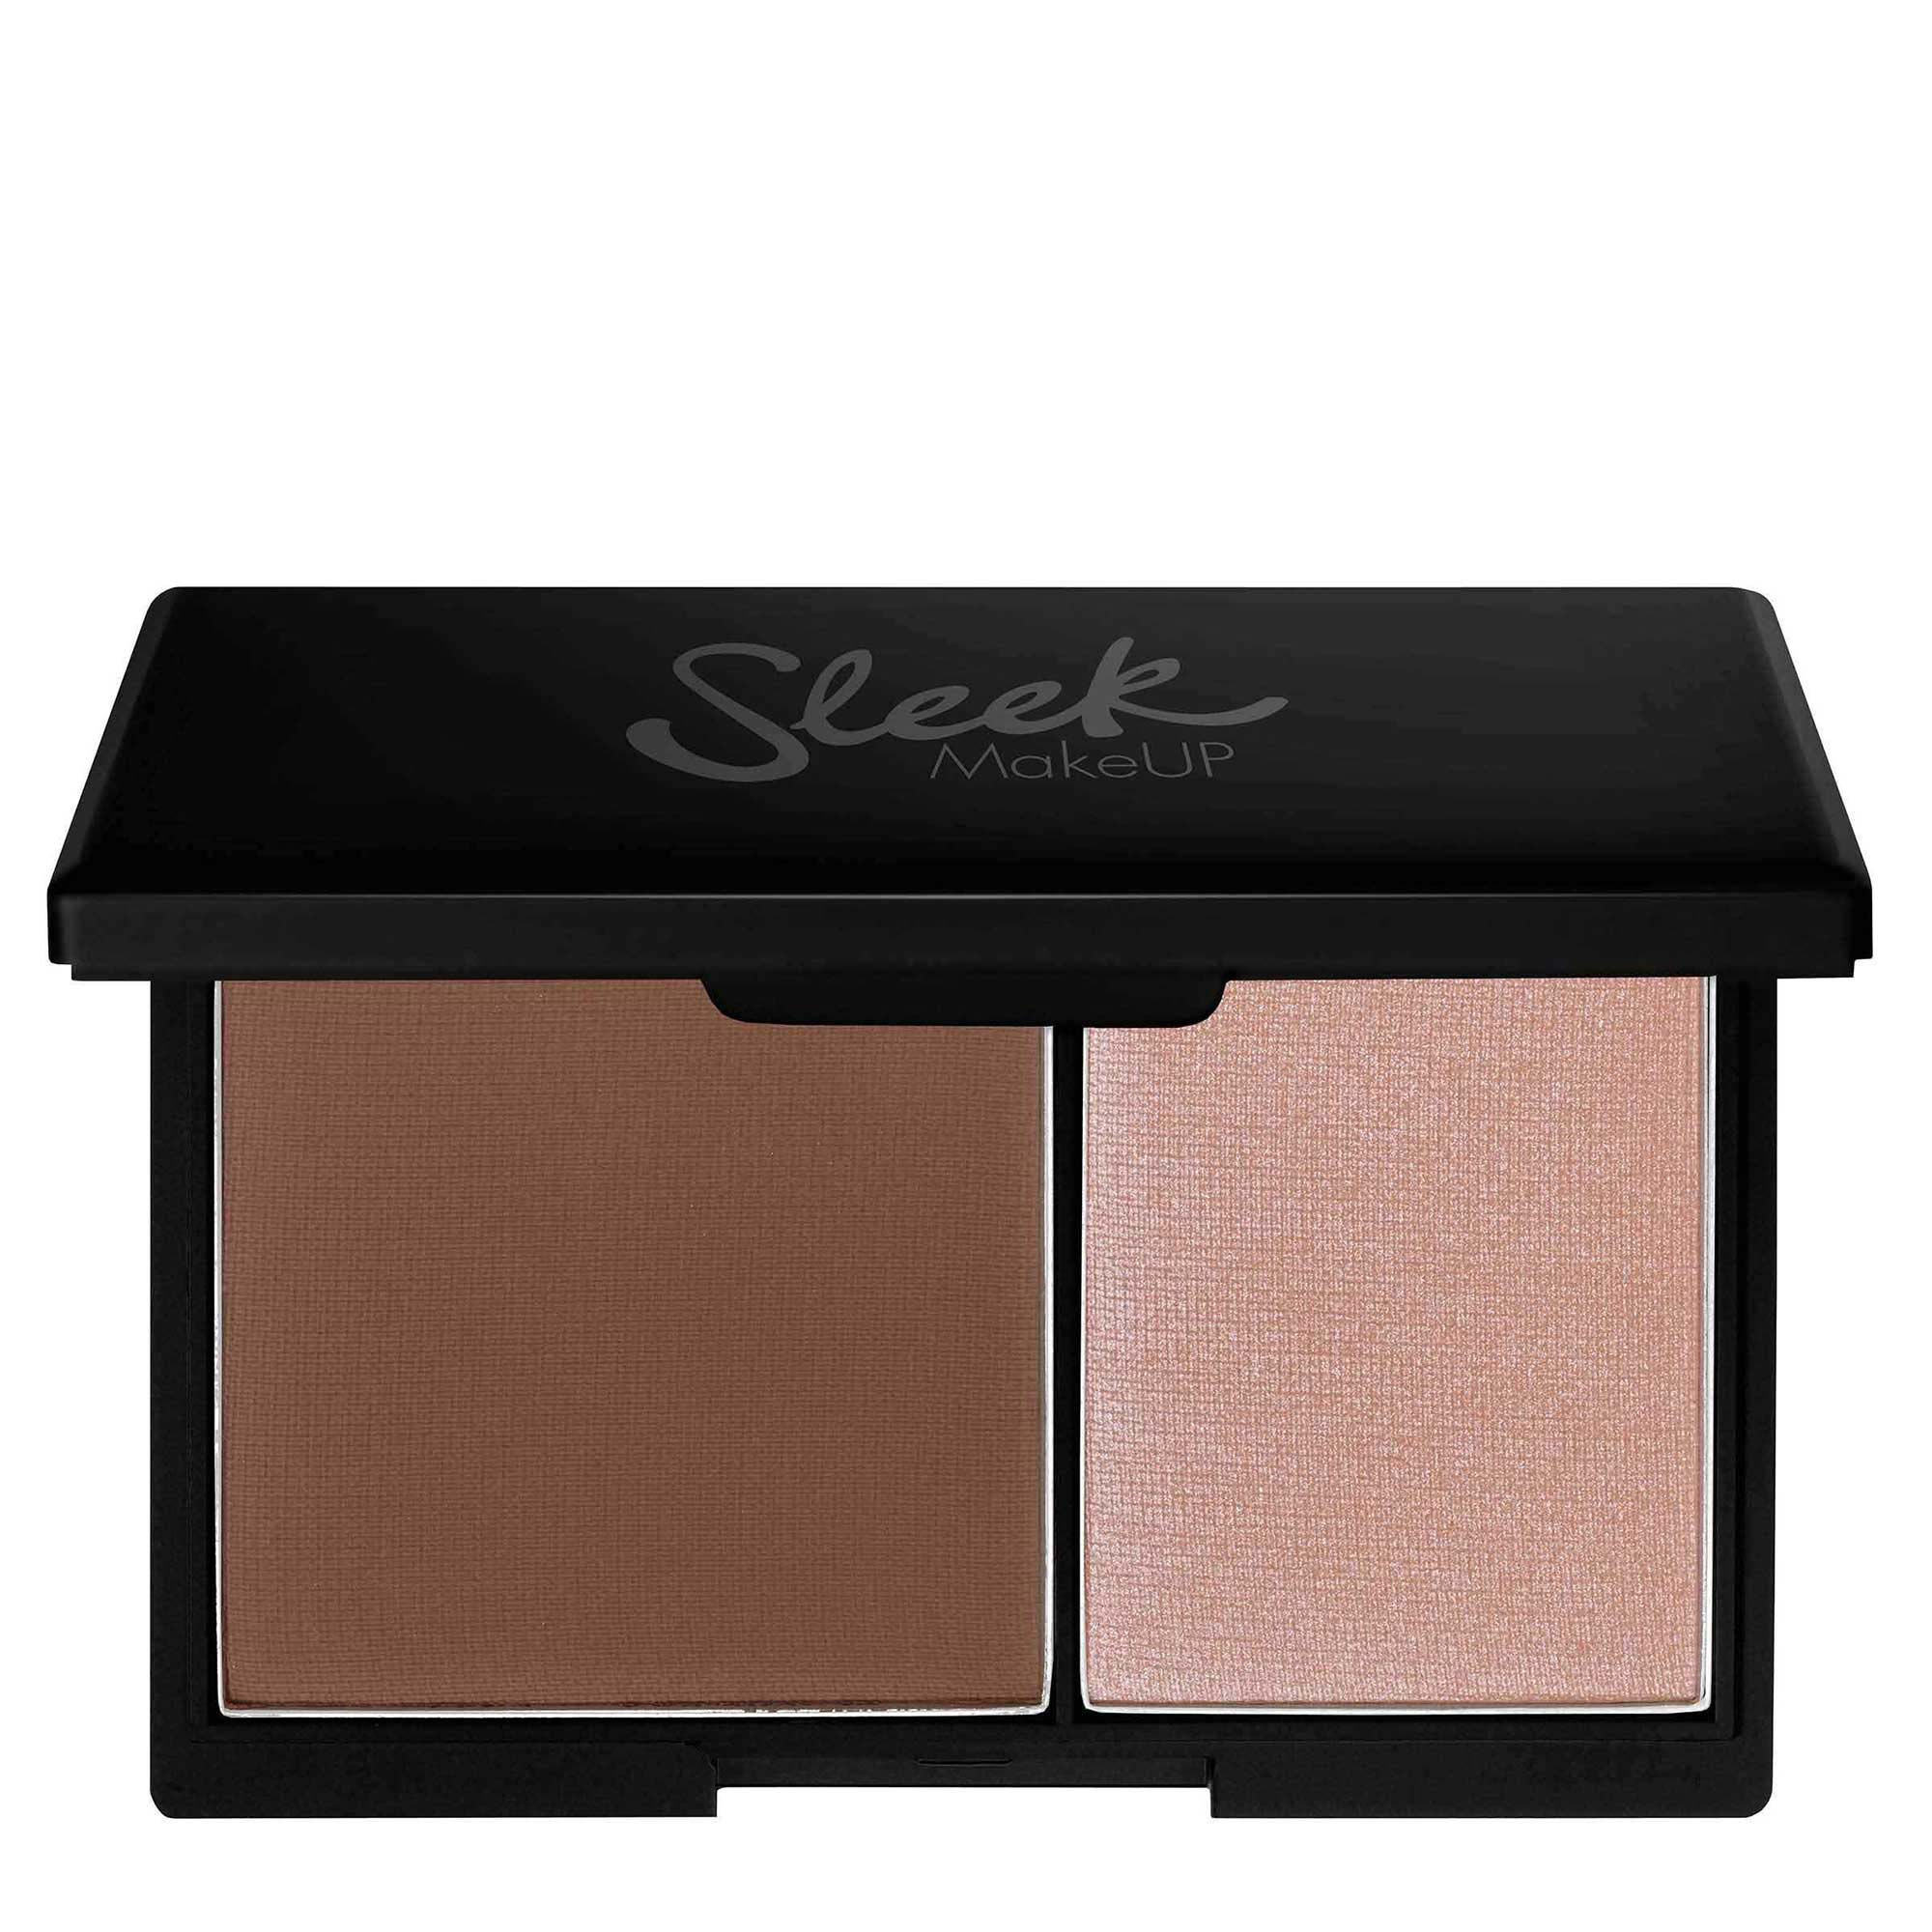 Sleek Makeup Face Contour Kit - Light